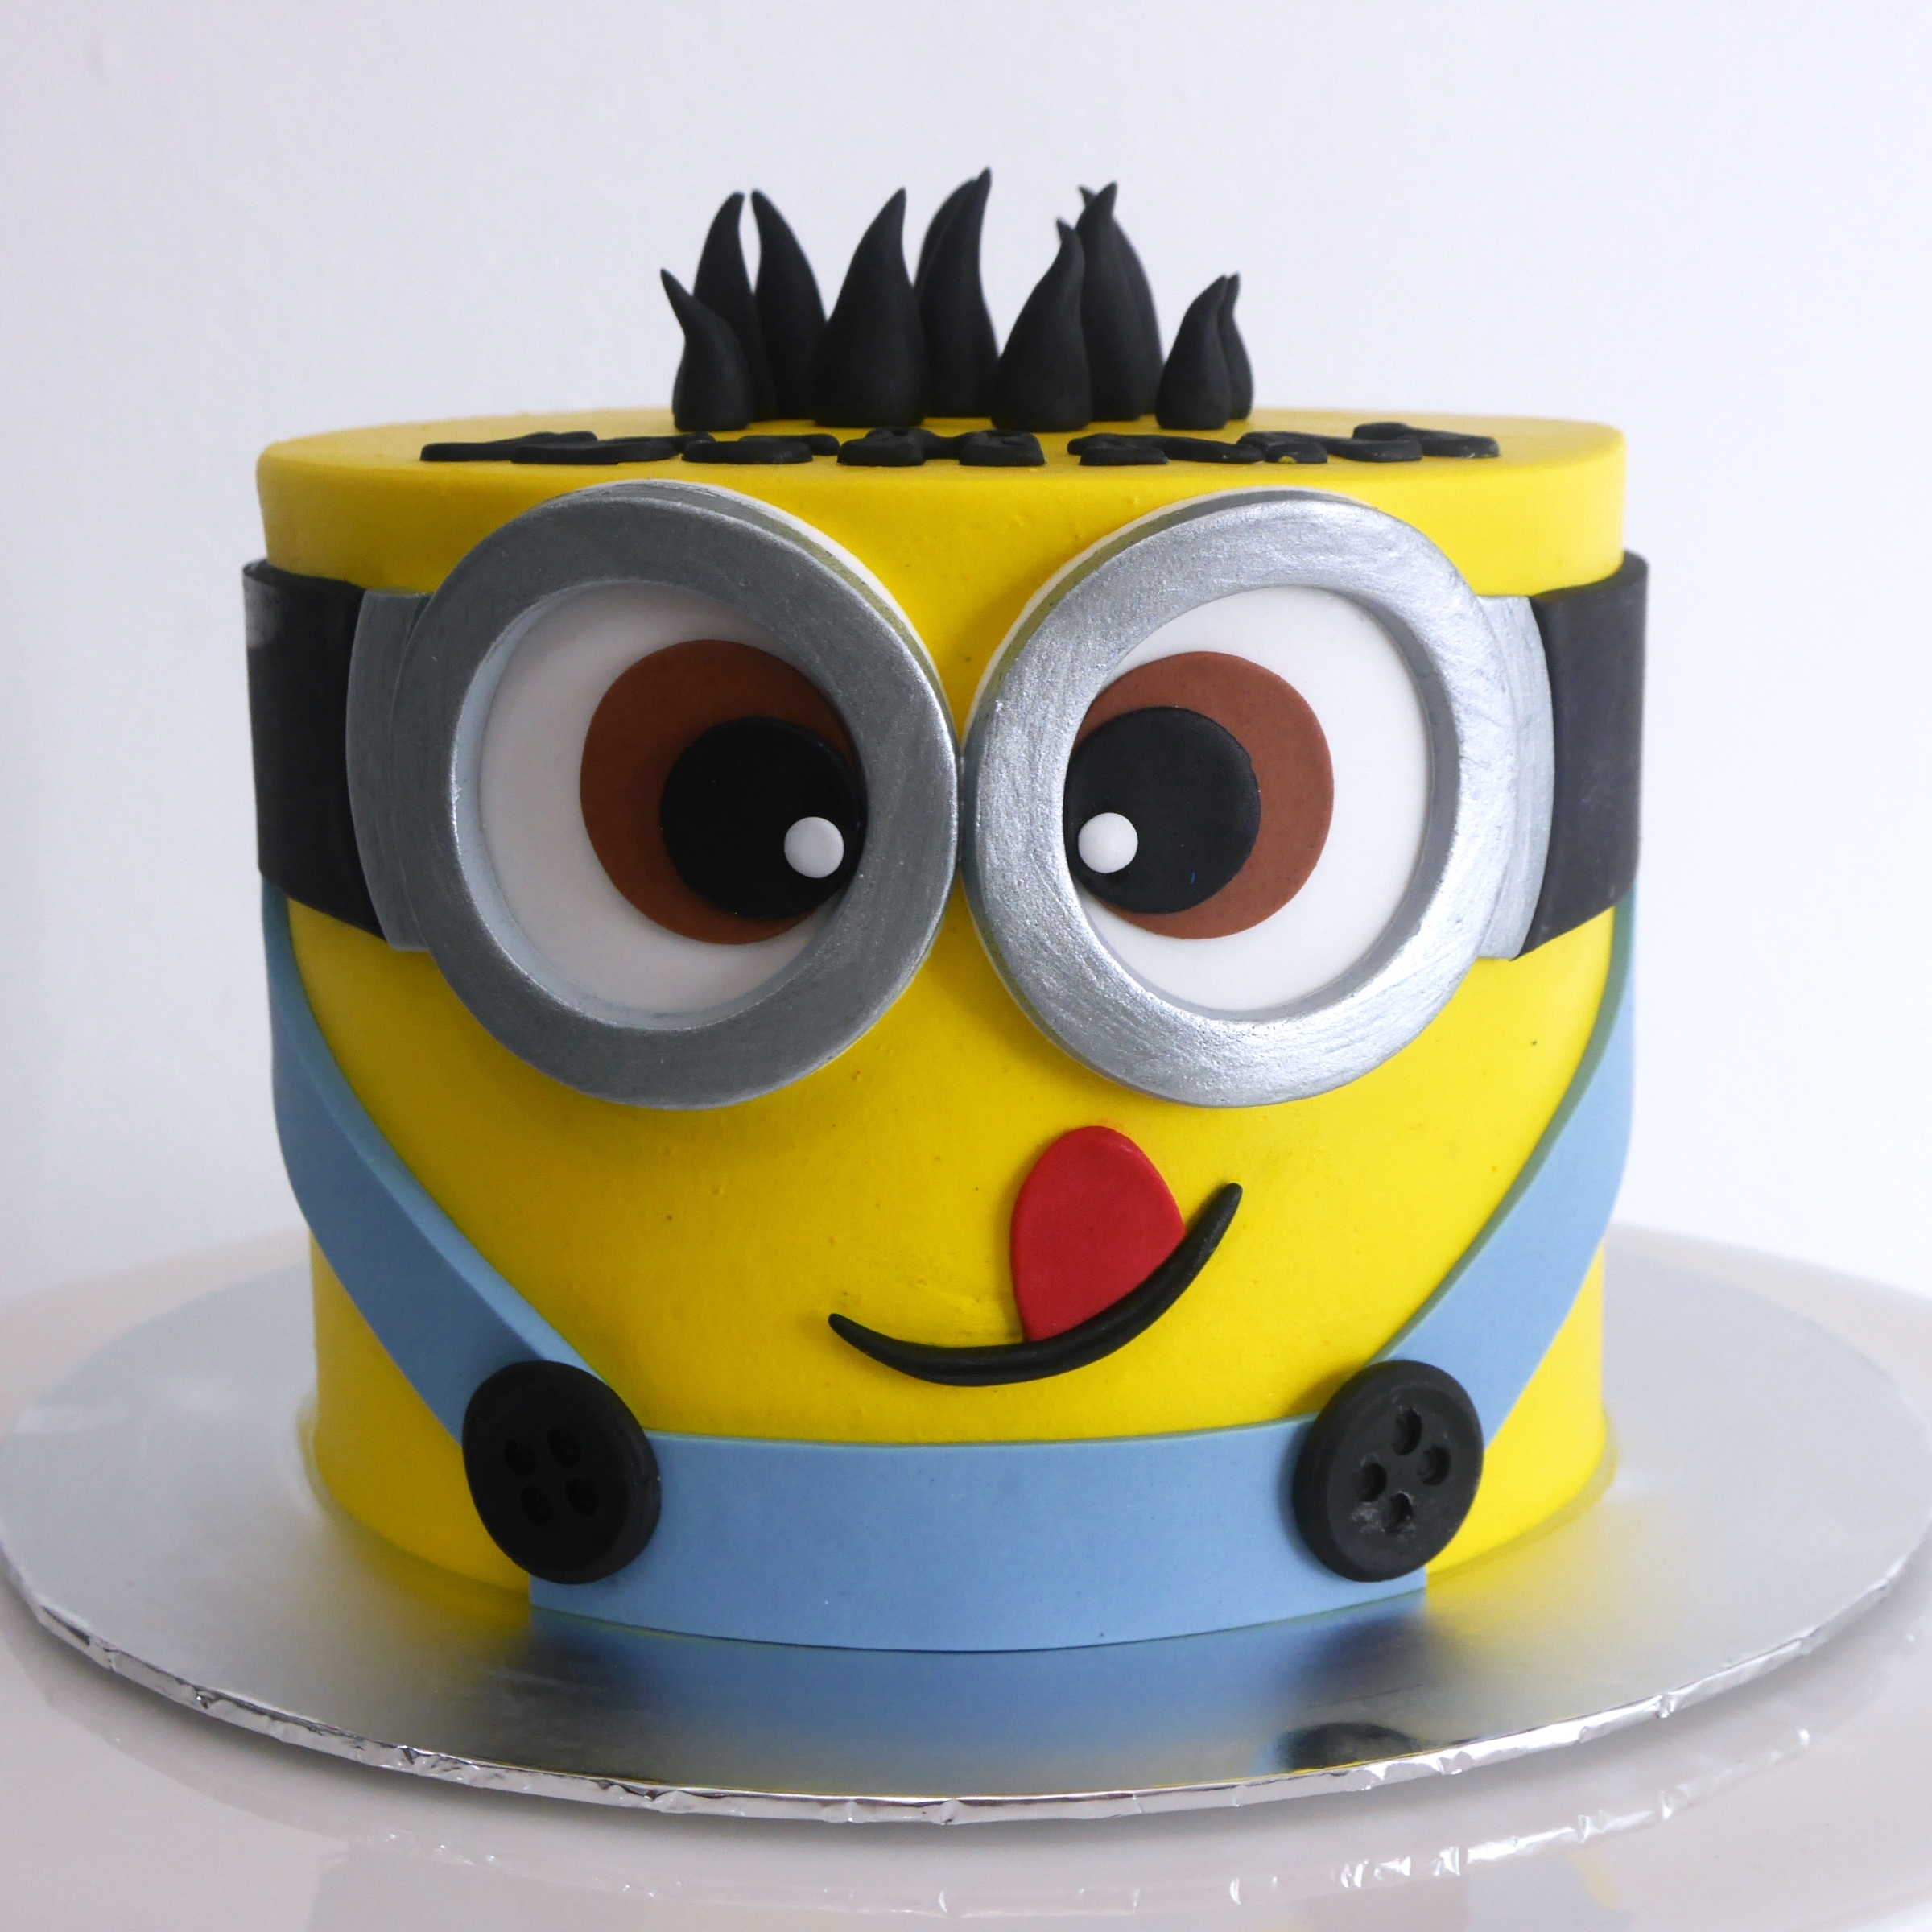 Minion Theme Cake, minion birthday cake with name